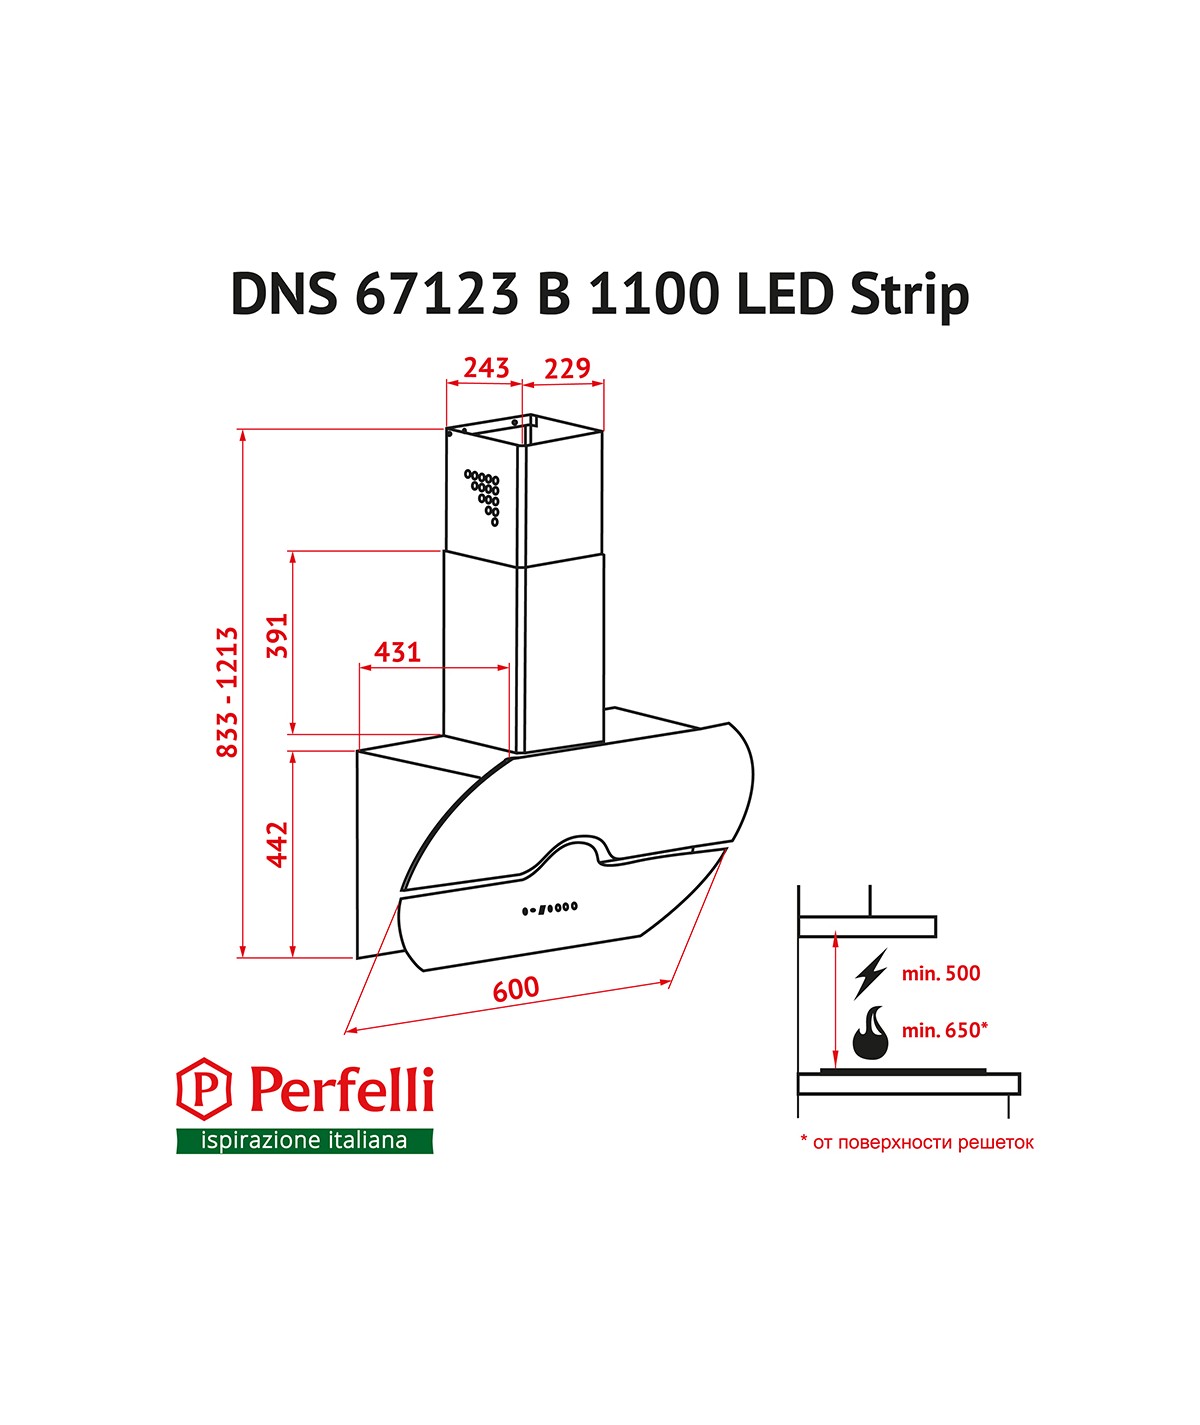 Perfelli DNS 67123 B 1100 BL LED Strip Габаритные размеры